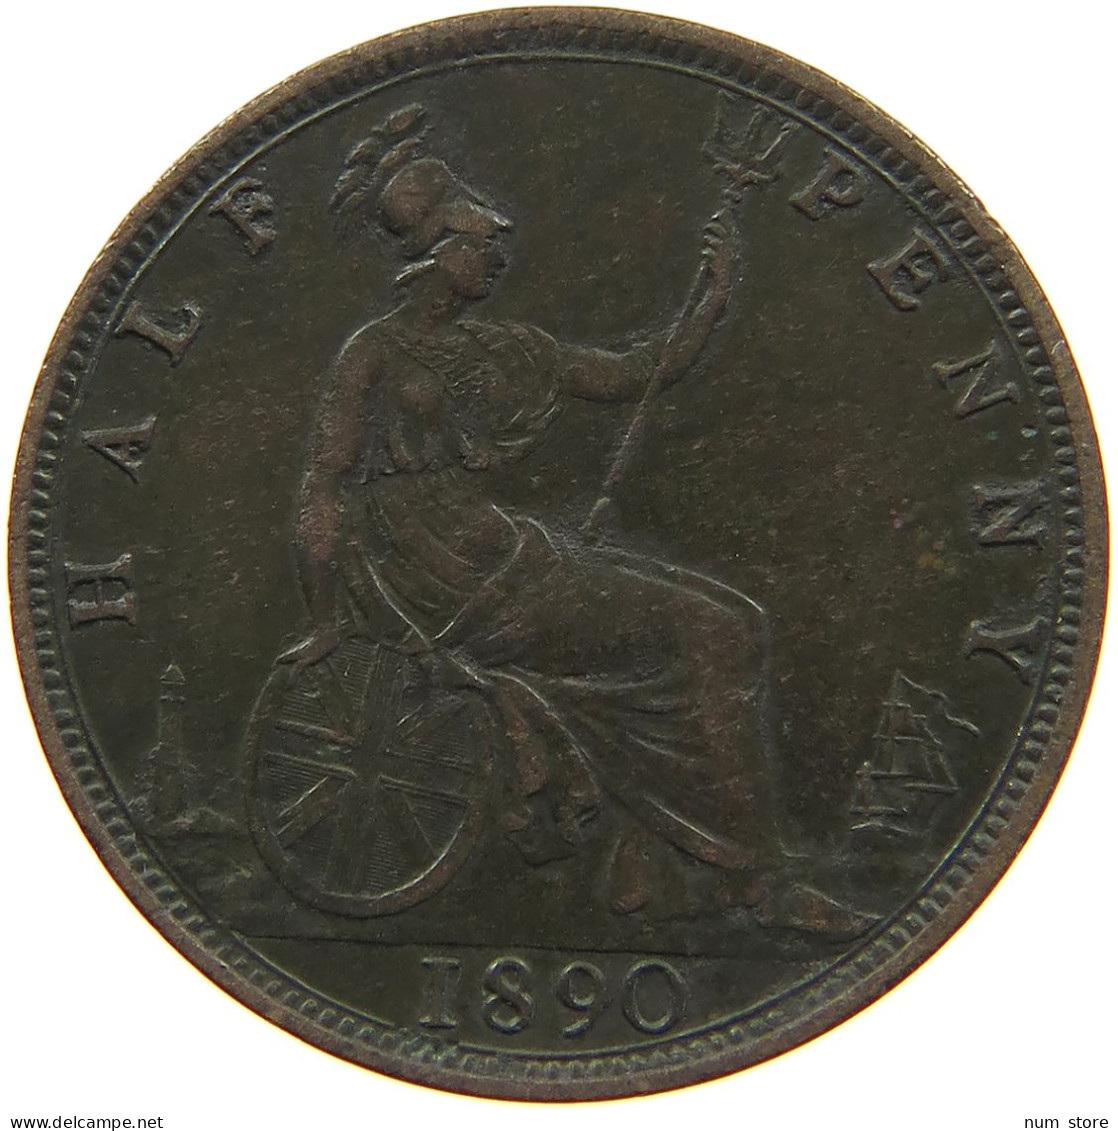 GREAT BRITAIN HALFPENNY 1890 Victoria 1837-1901 #c034 0005 - C. 1/2 Penny